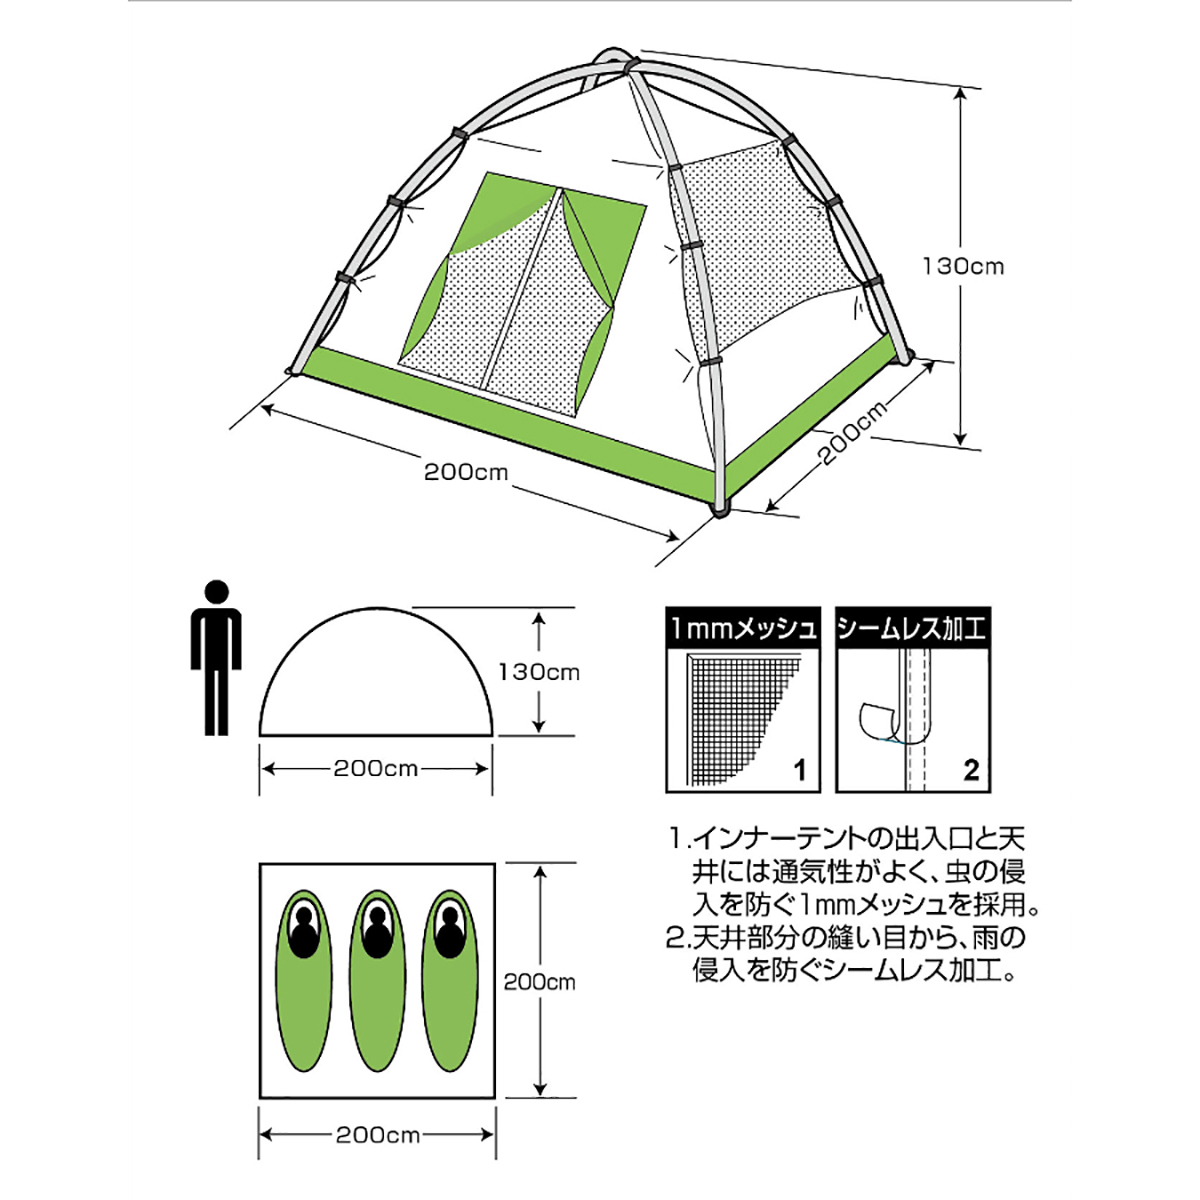 クレセント 3人用ドームテント(グリーン) - アウトドア・キャンプ用品 